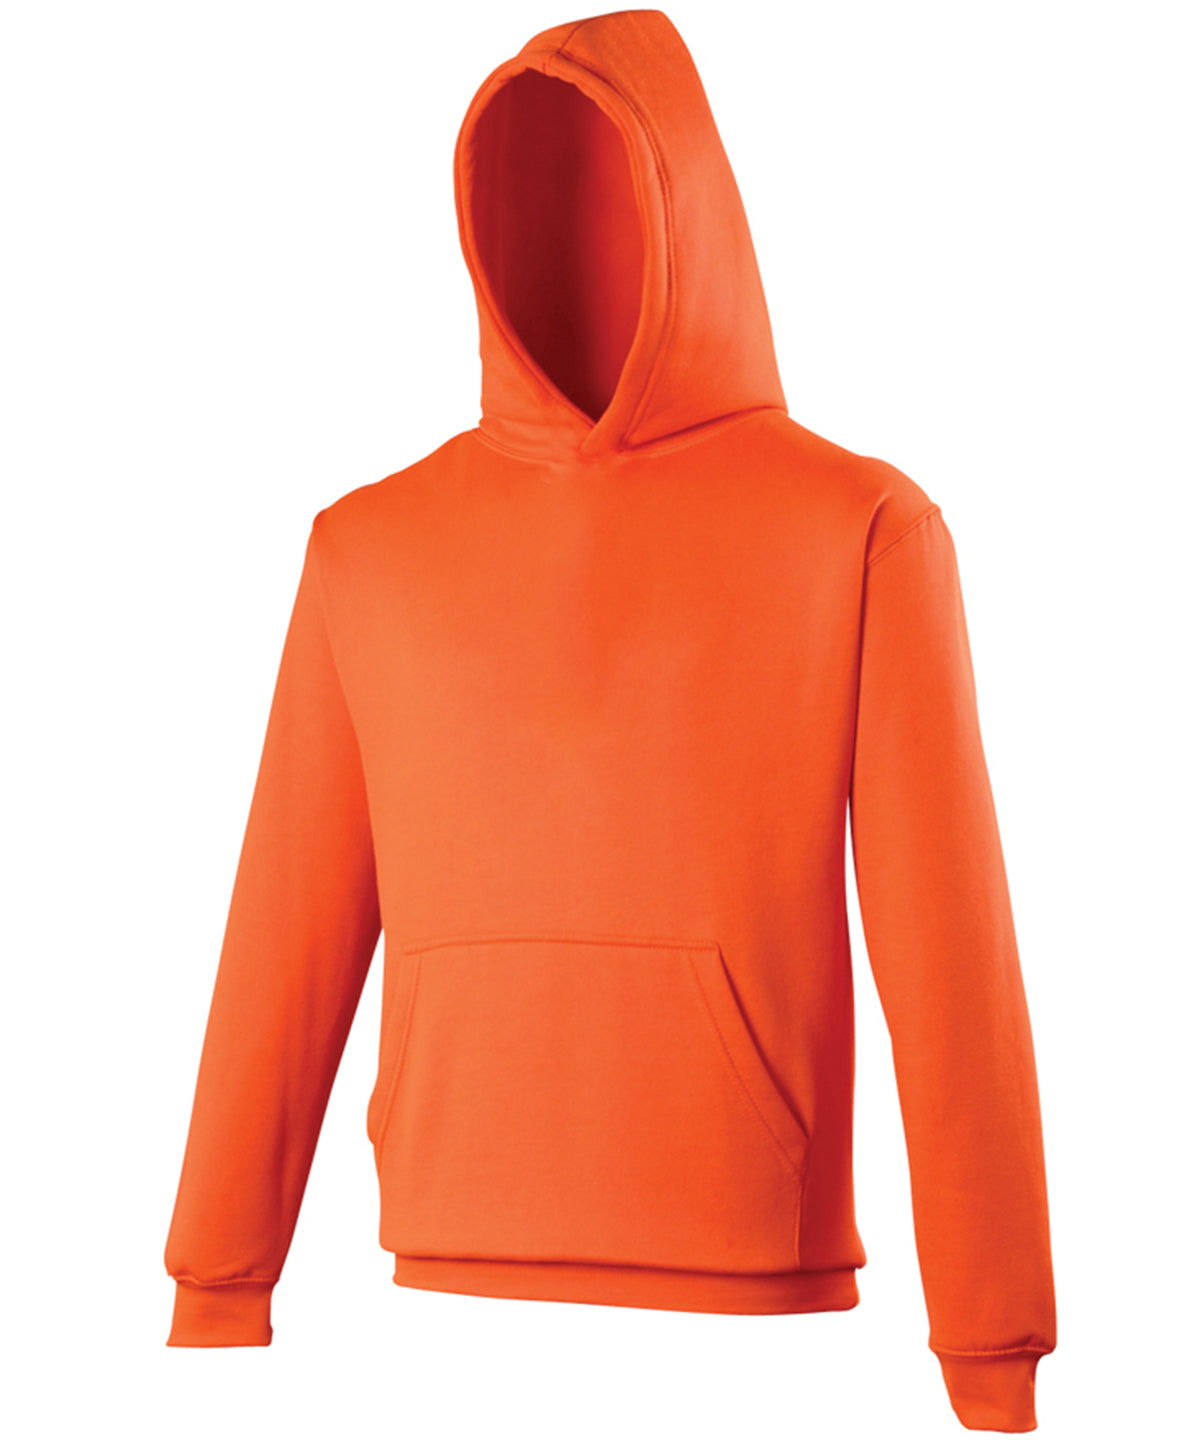 Personalised Hoodies - Neon Green AWDis Just Hoods Kids electric hoodie